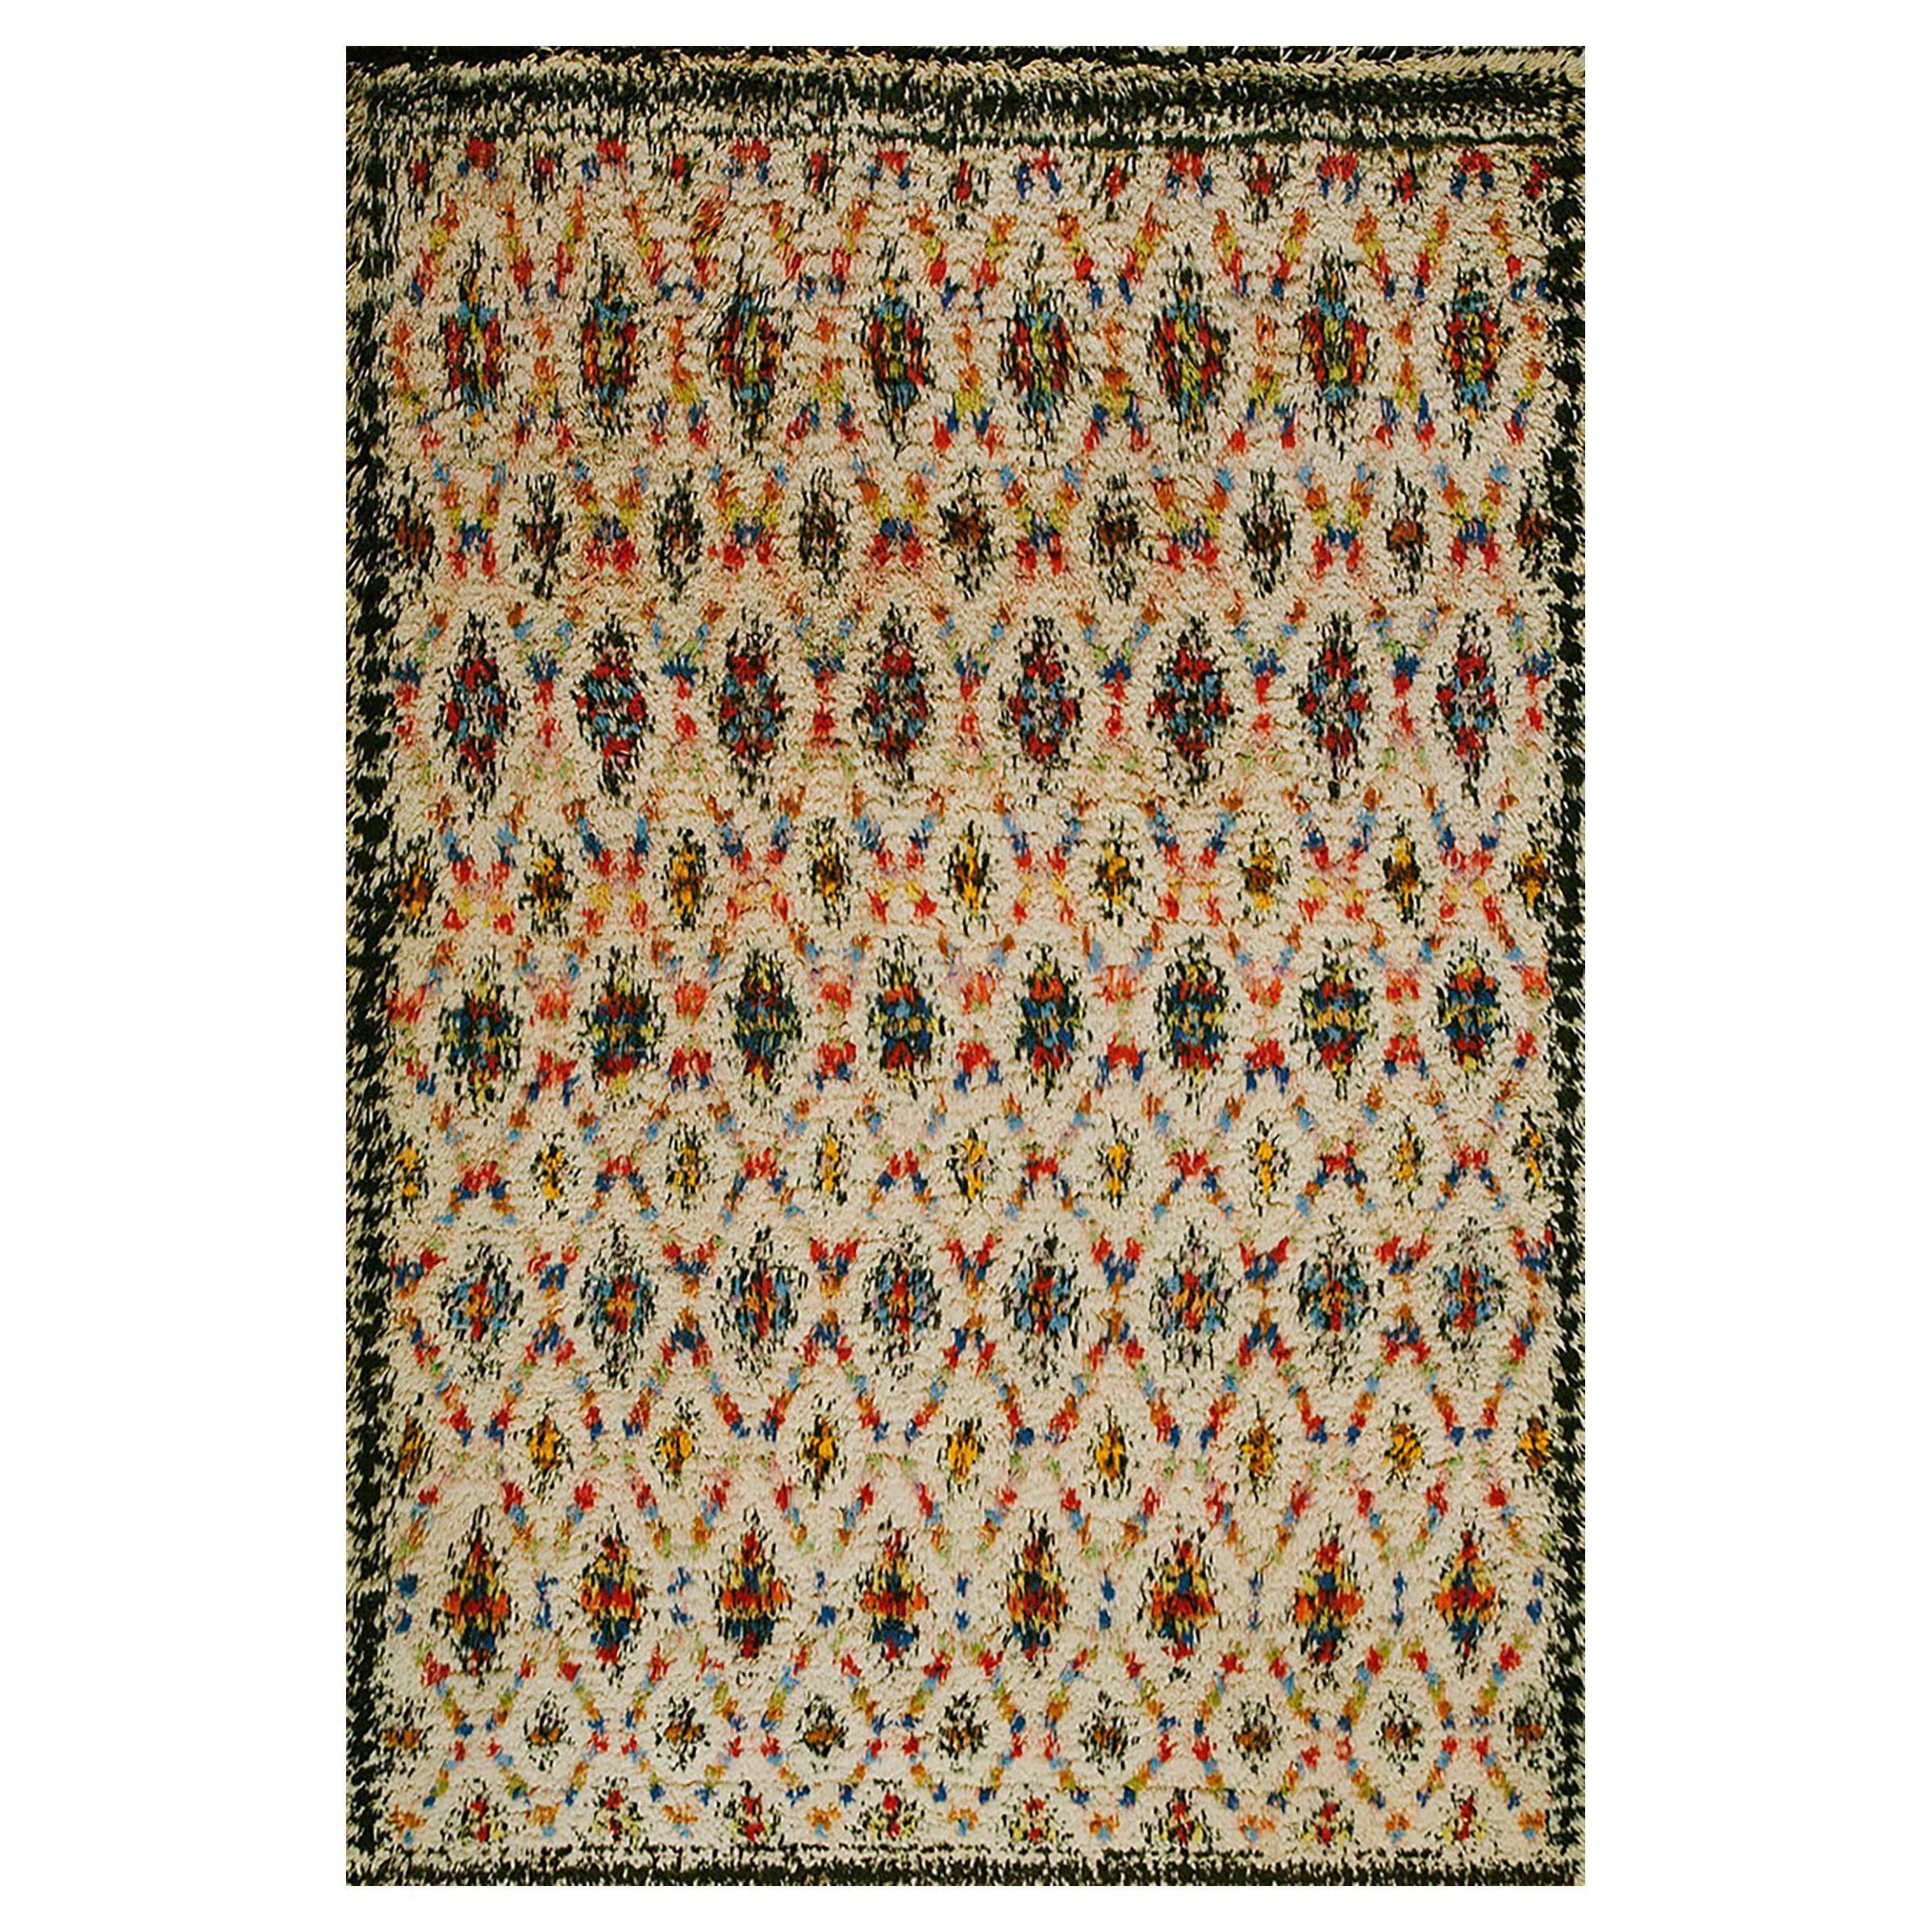 Antique Moroccan Rug